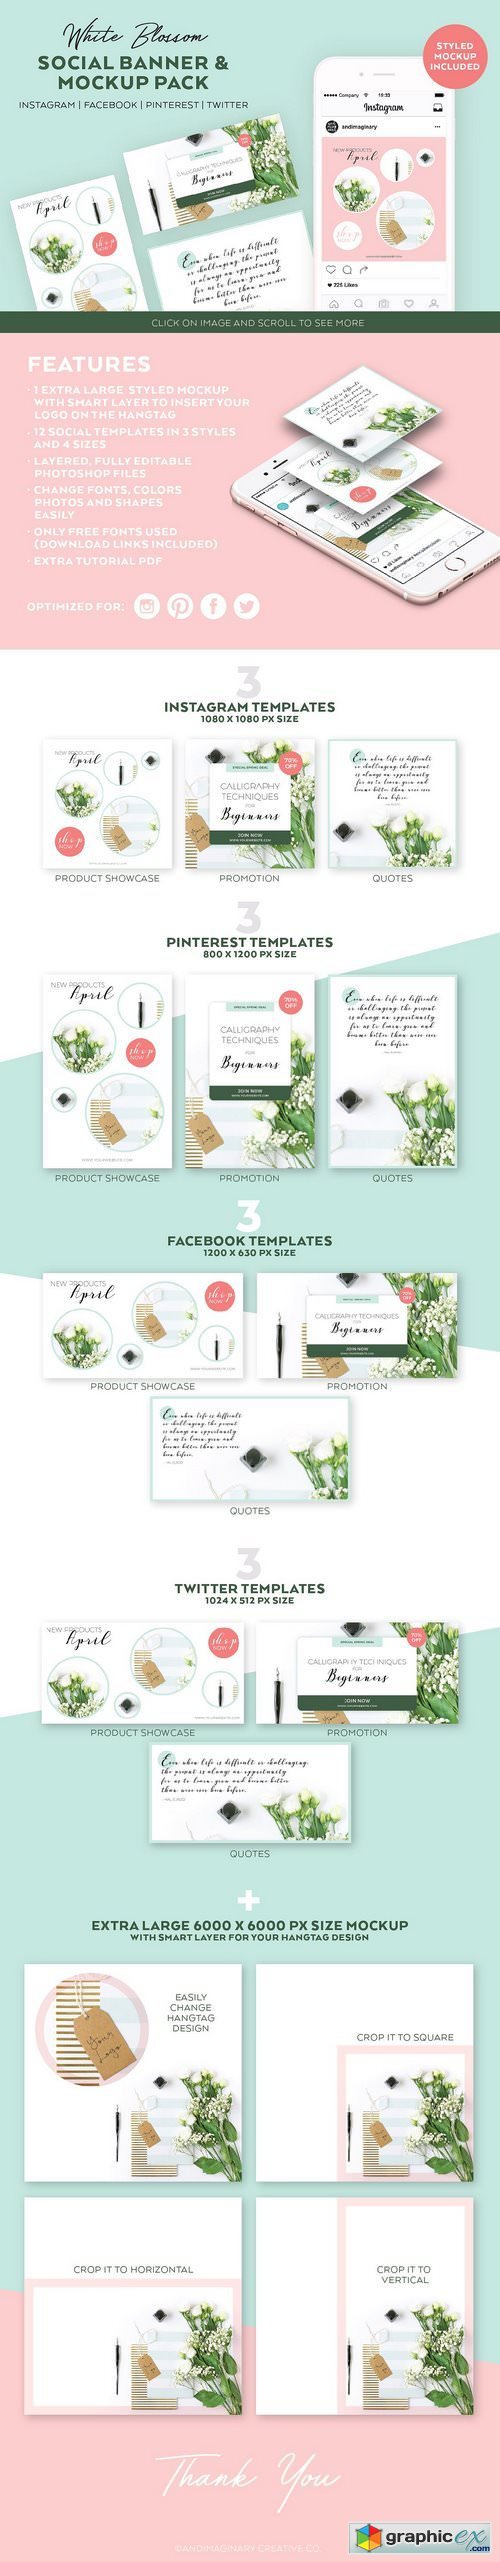 White Blossom Social Template Pack